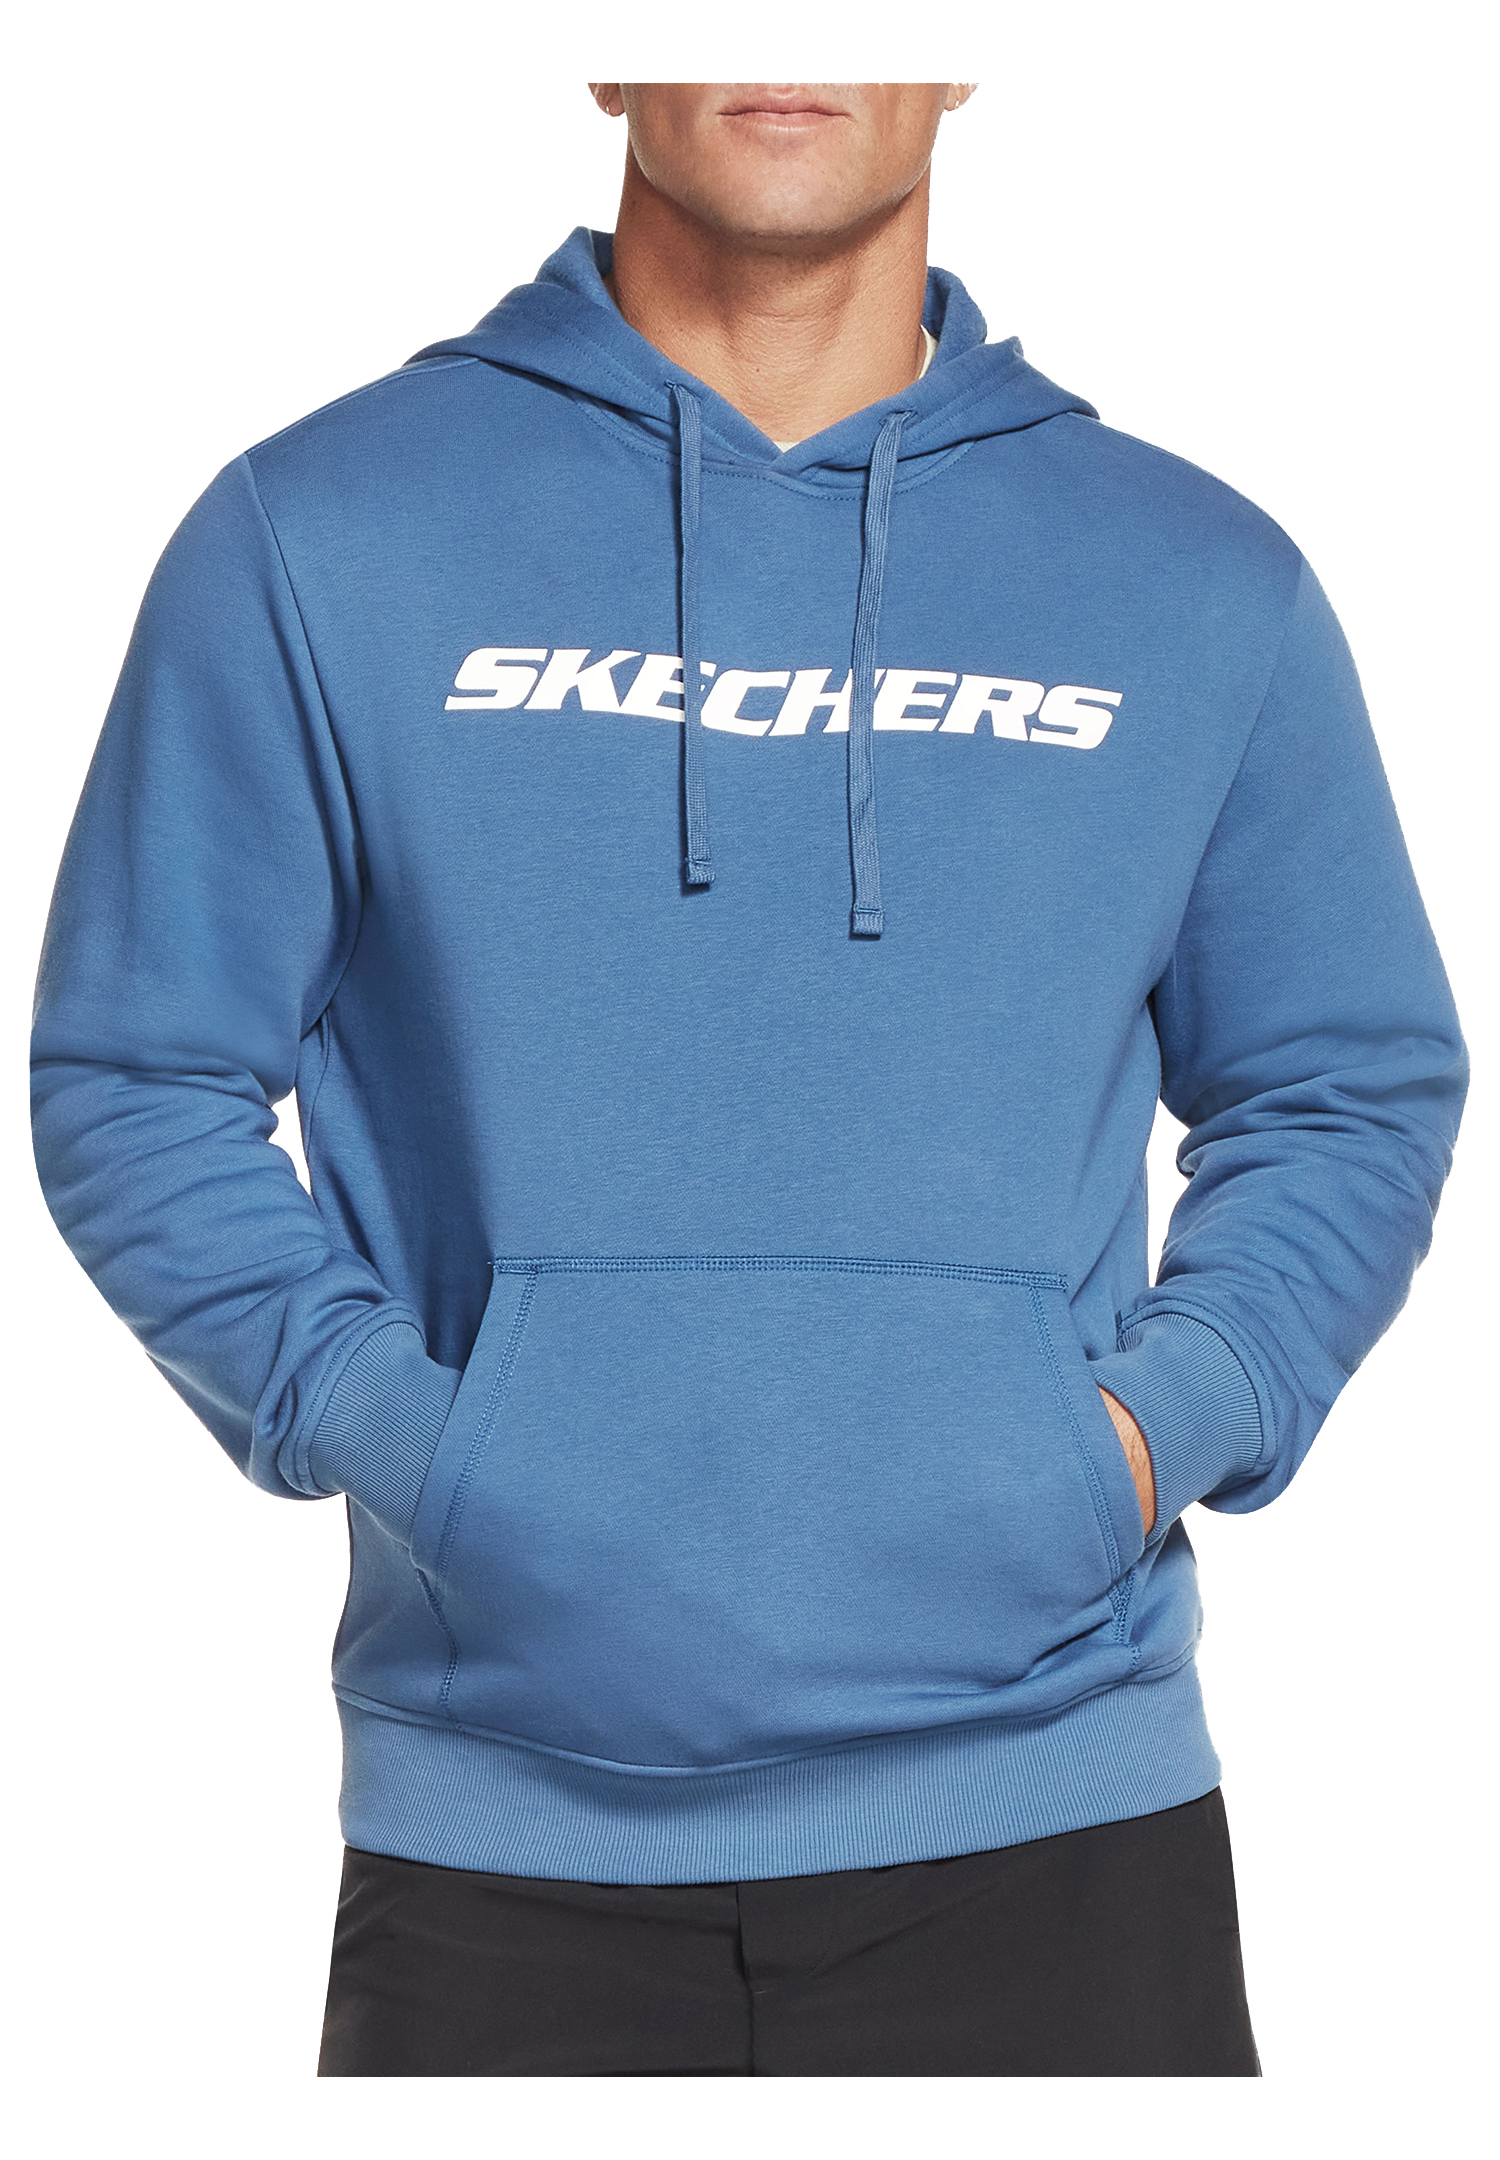 Skechers Apparel Heritage Pullover Hoodie Herren Kapuzensweatshirt MHD12 Blau